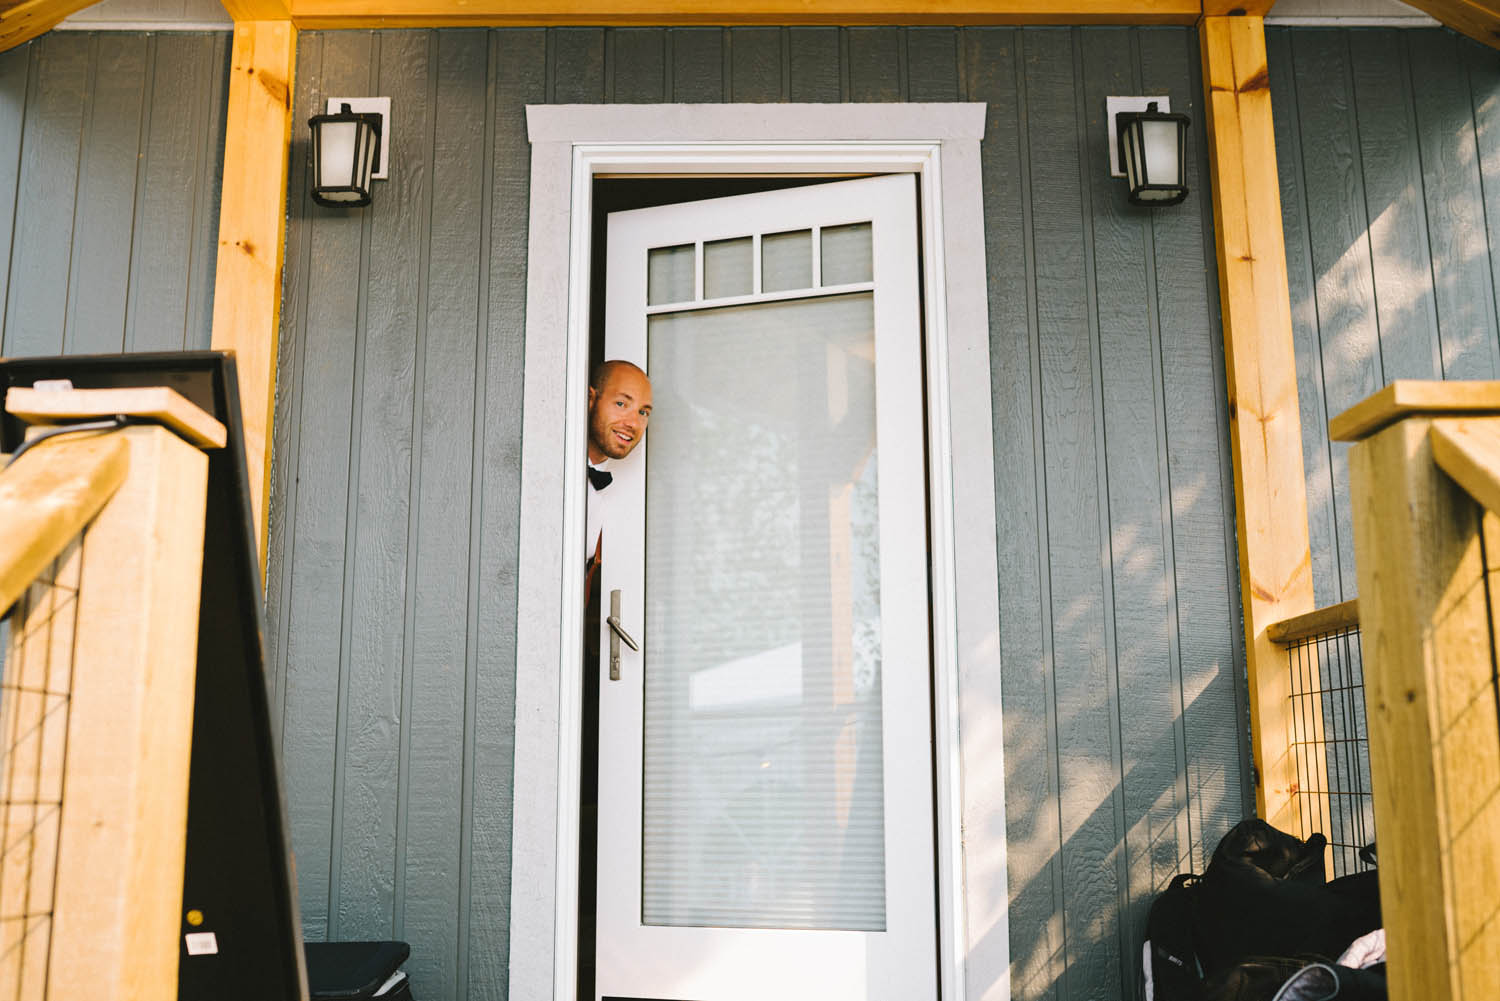 Alysha + Jacob Kampphotography Winnipeg Wedding Photographers 